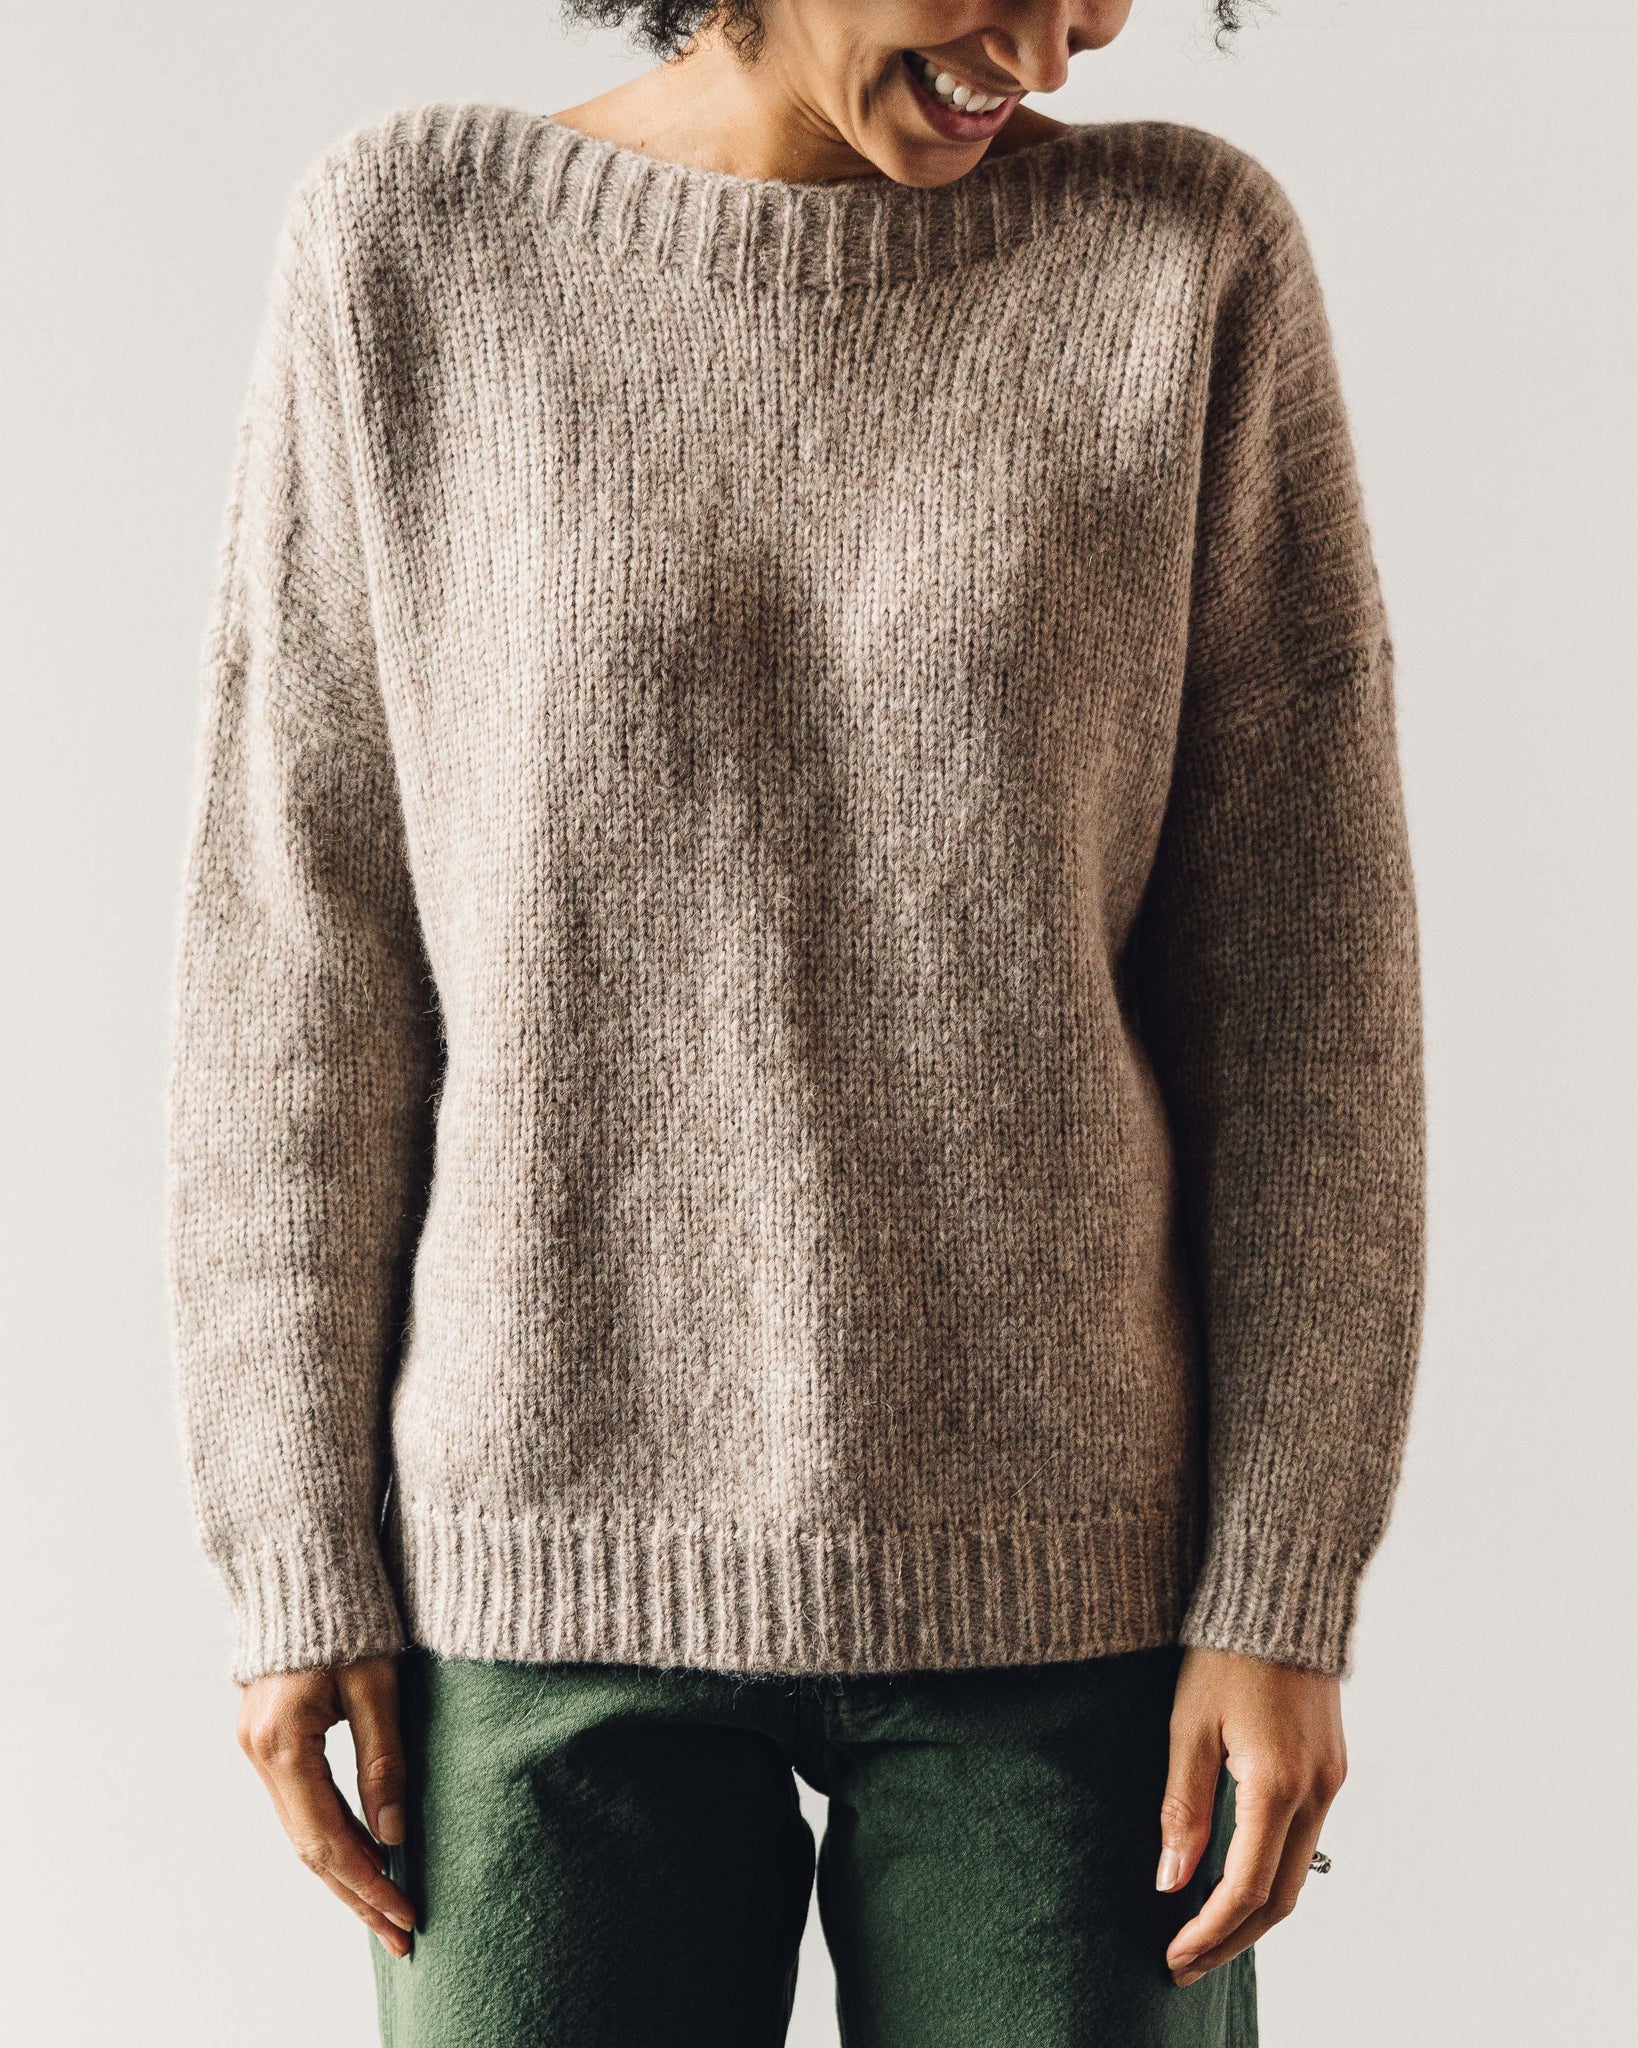 Atelier Delphine Tere Sweater, Deer